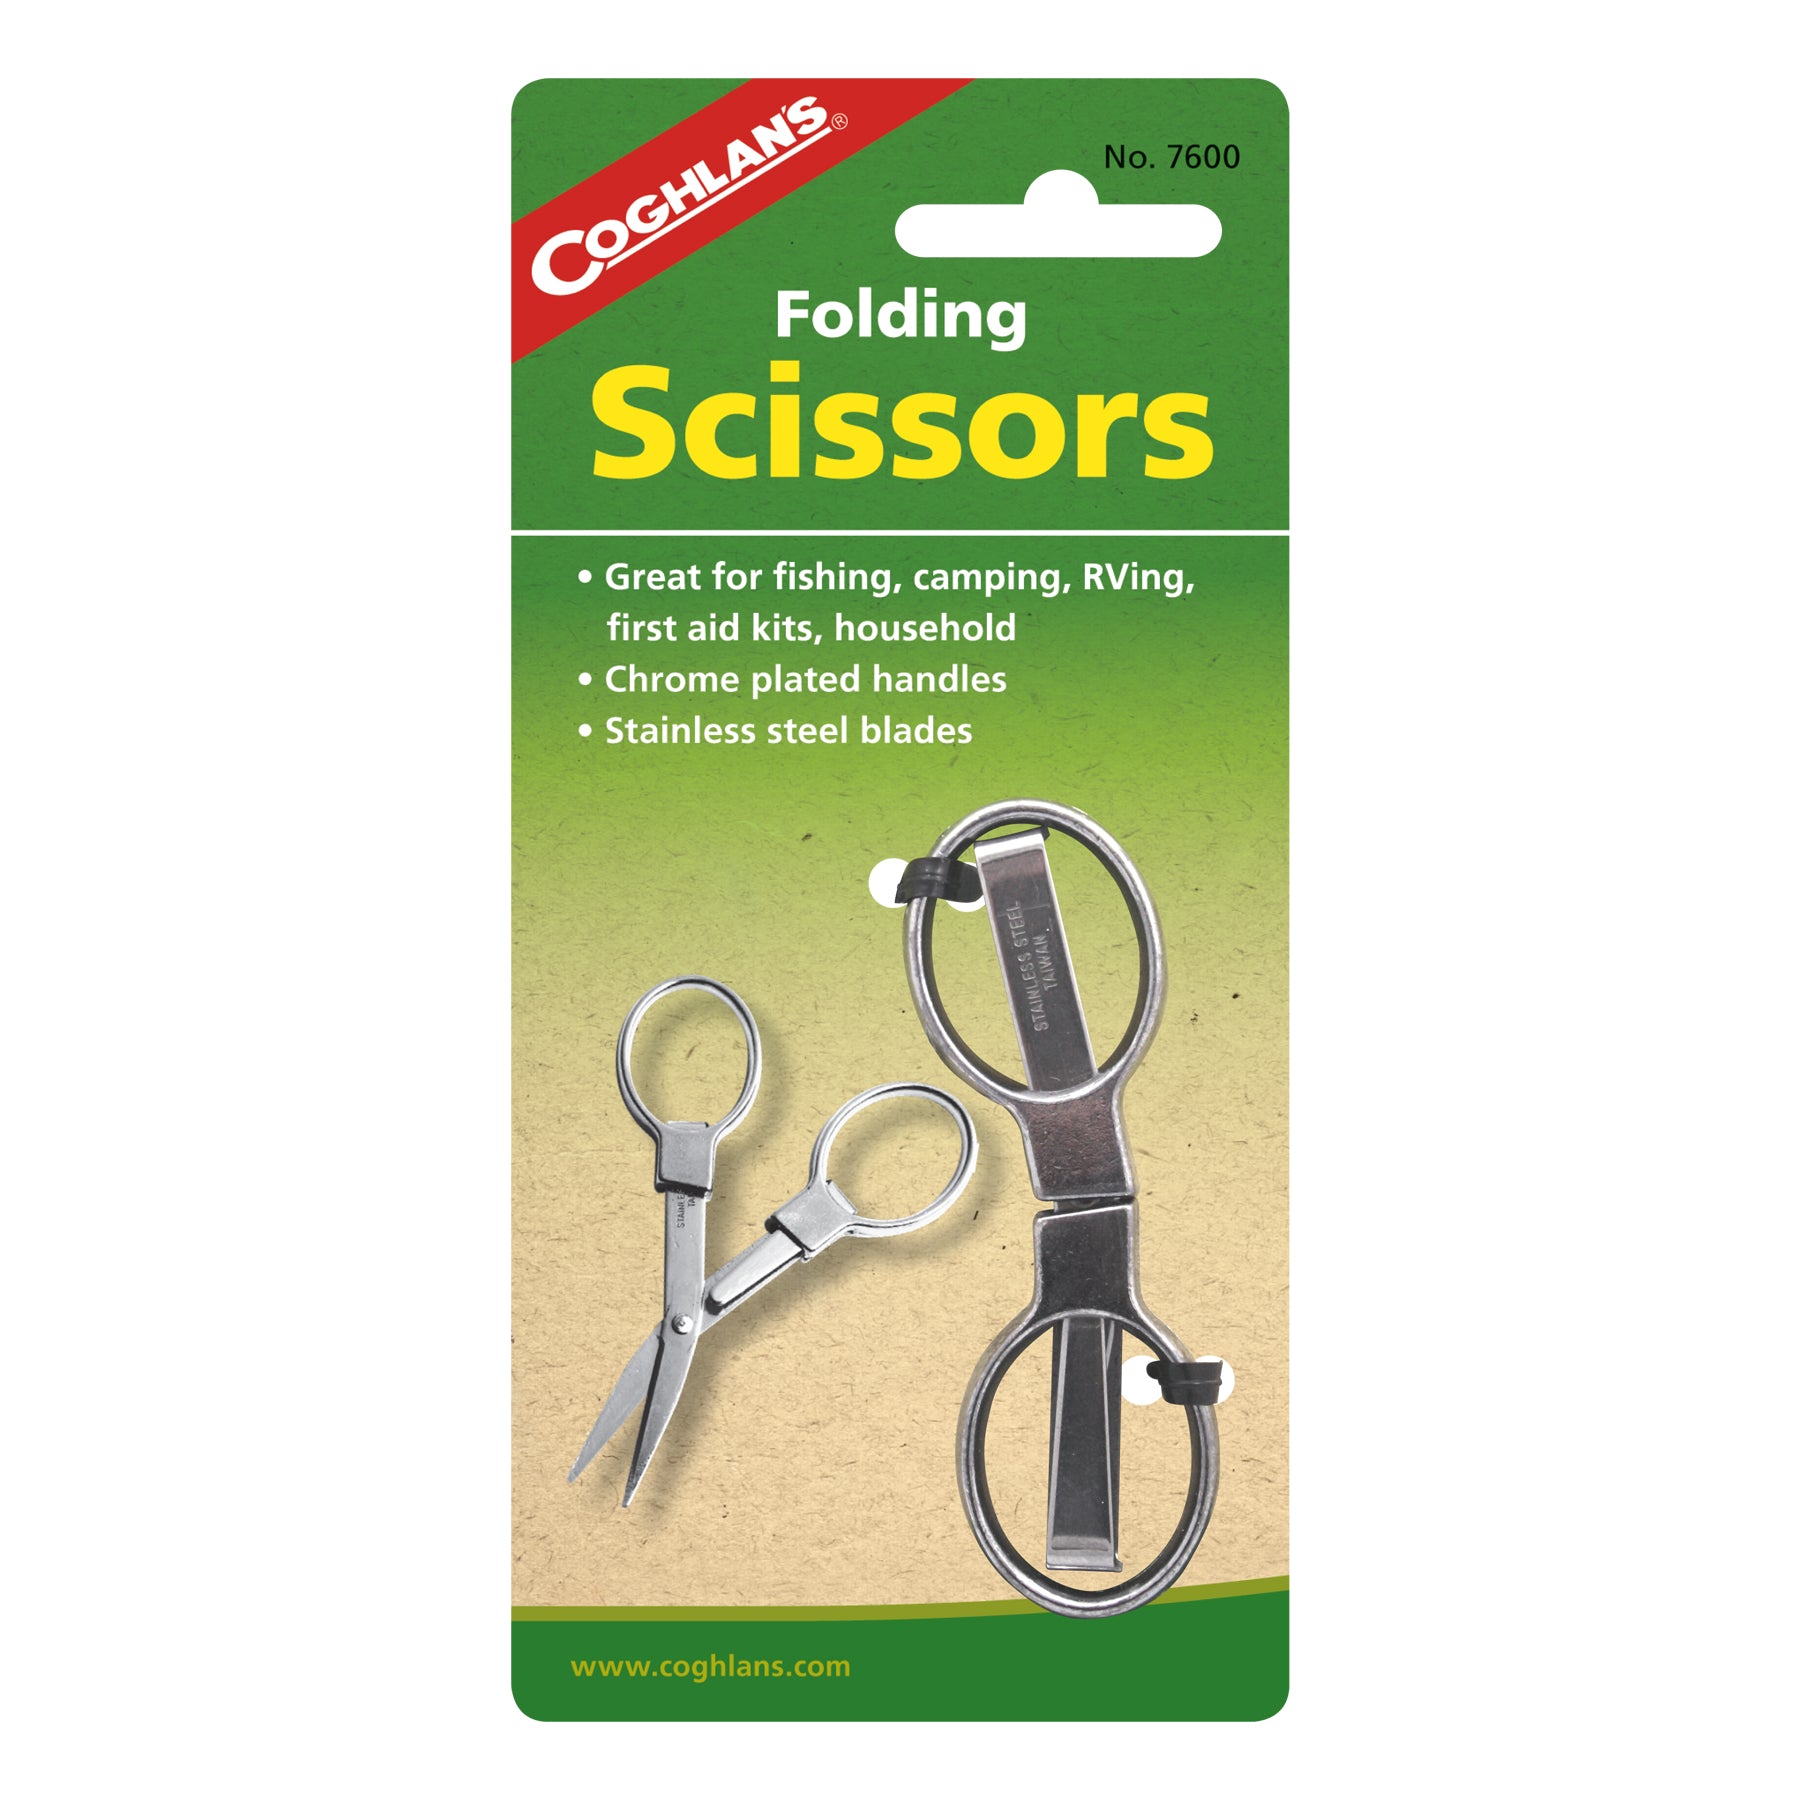 Coghlan's 7600 Folding Scissors, Stainless Steel